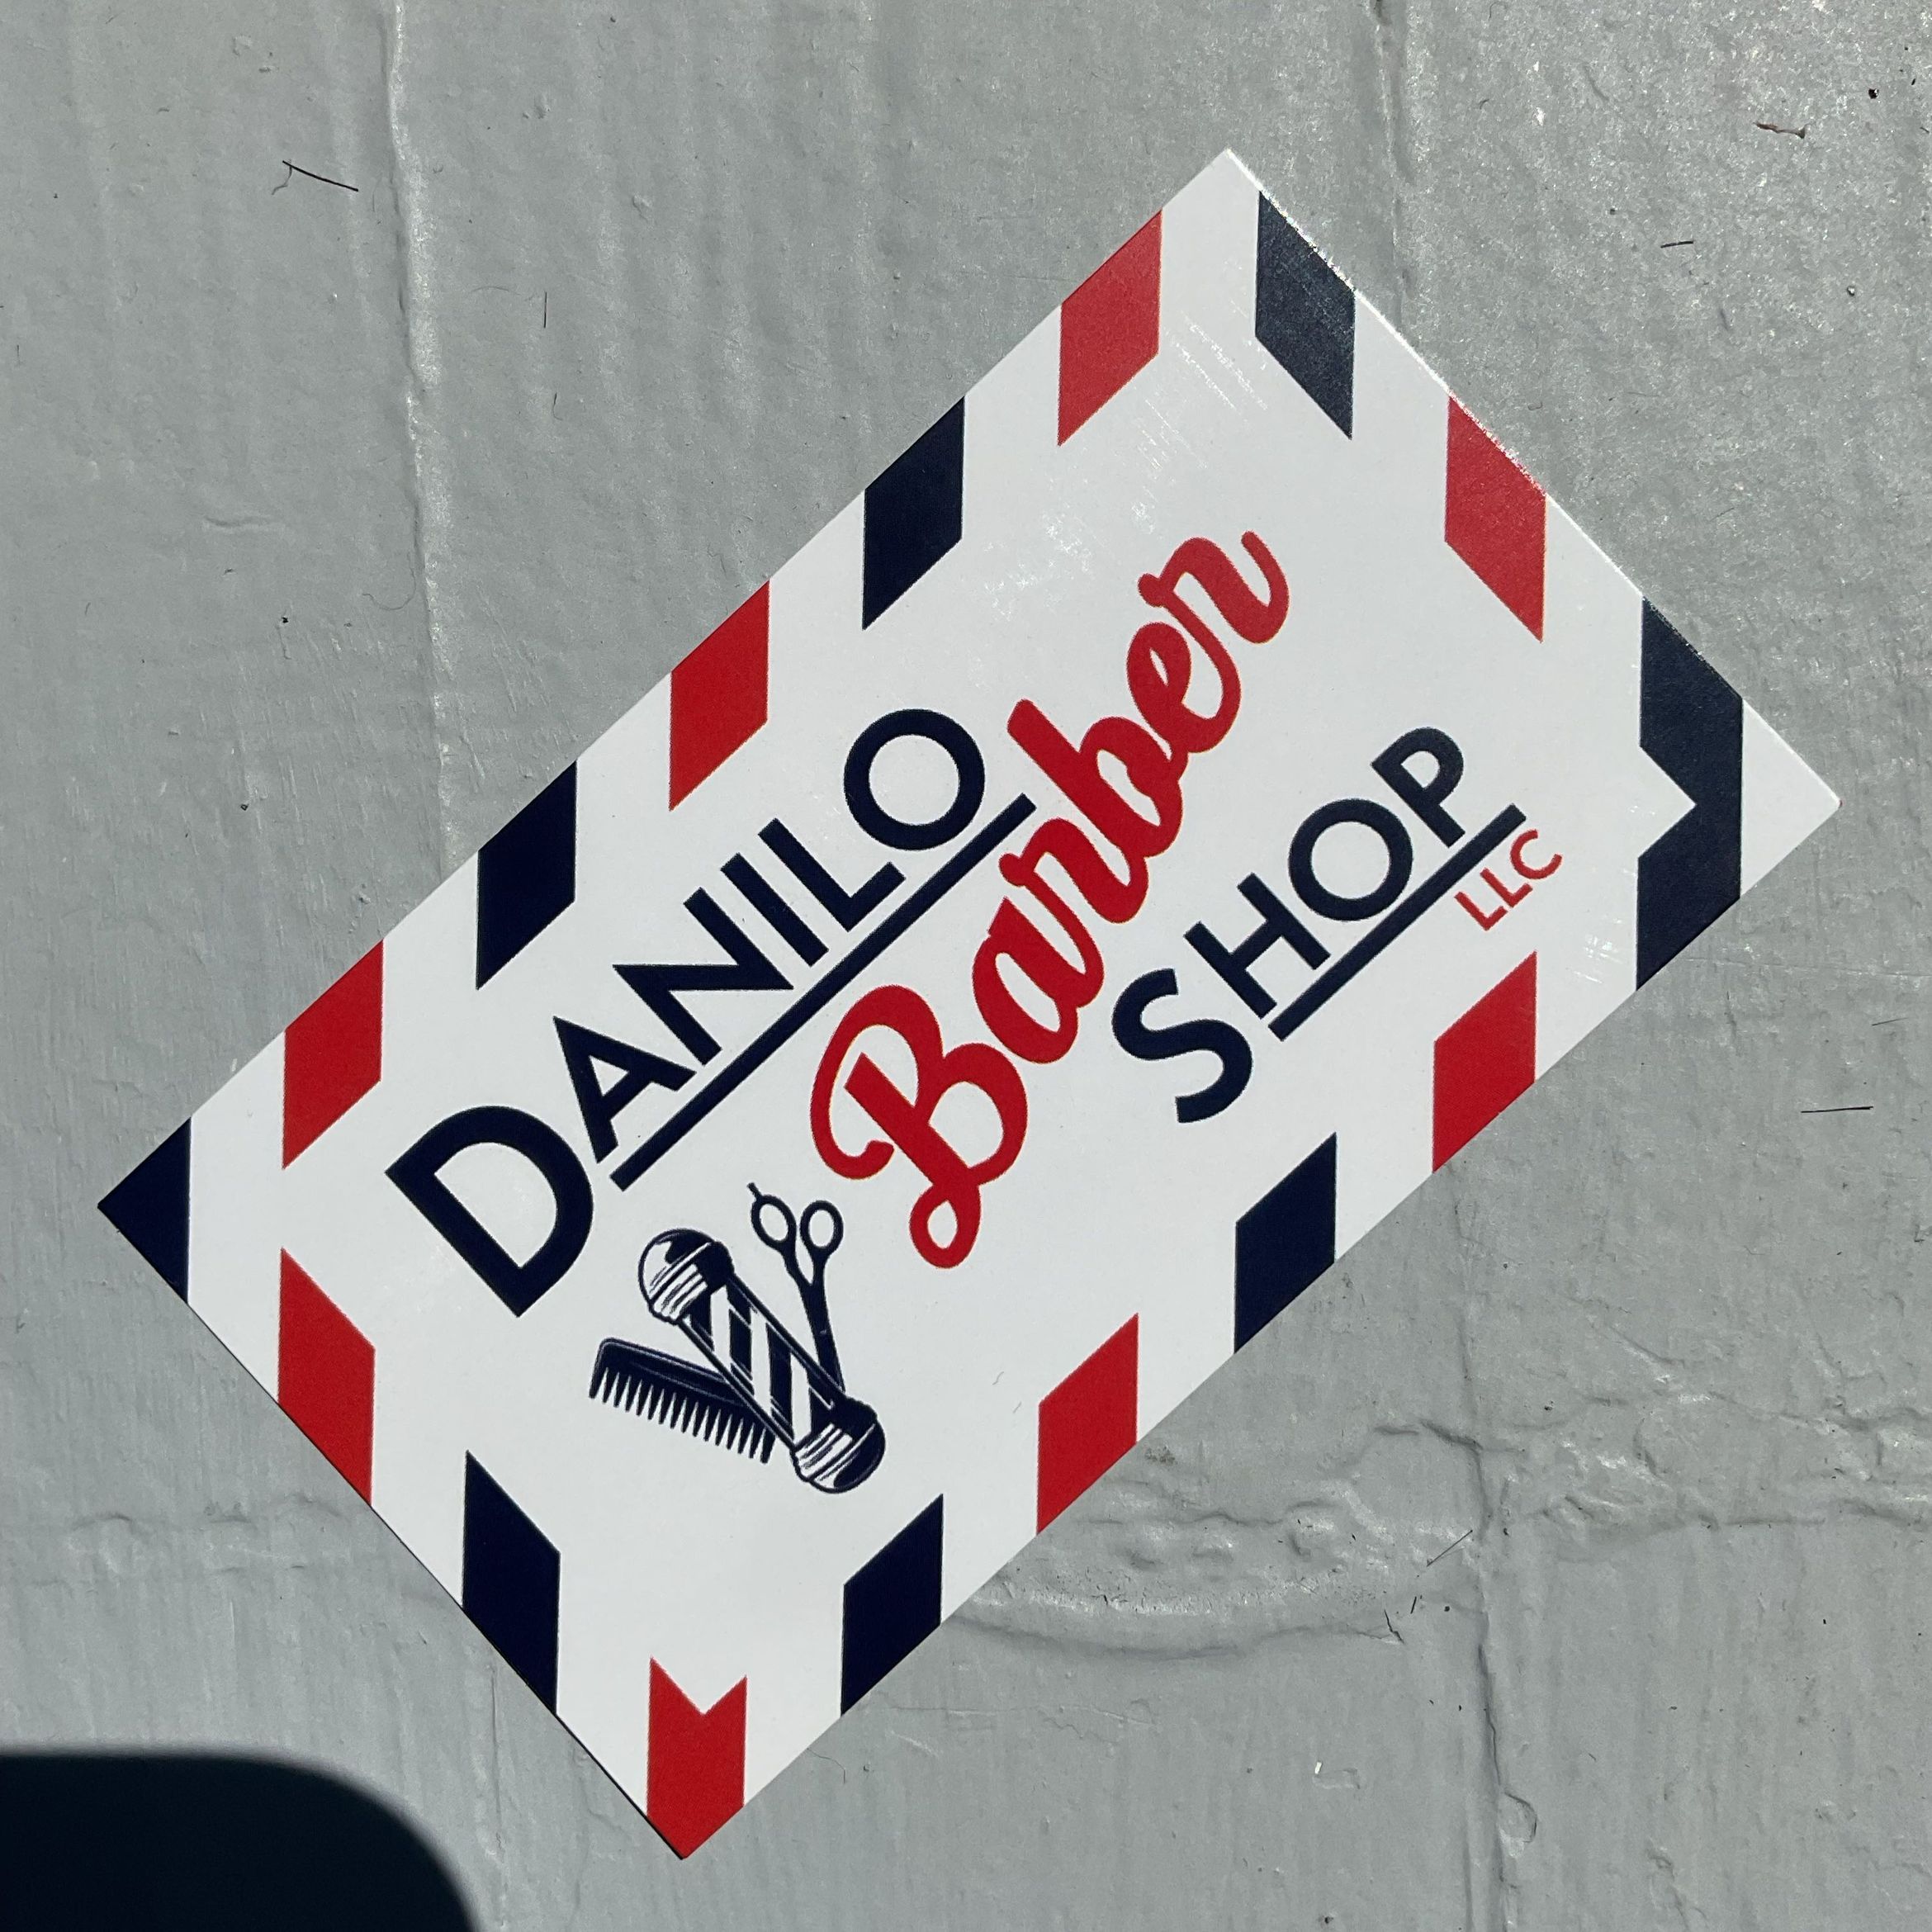 Danilo Barbershop LLC, 47 Franklin St, Quincy, 02169